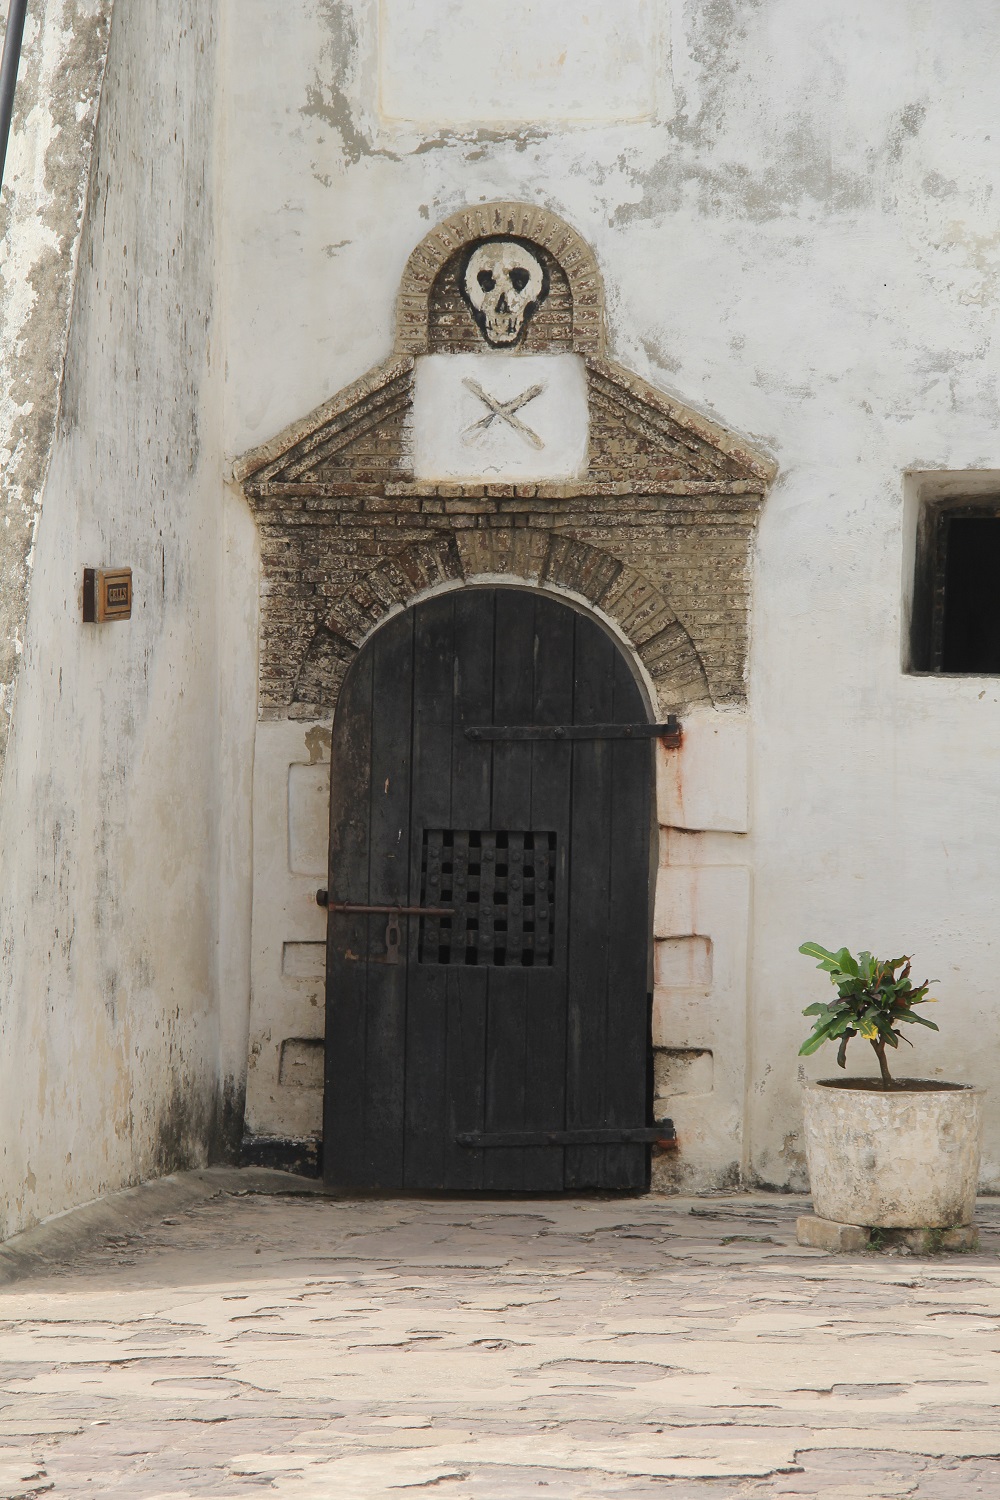 The Death Door